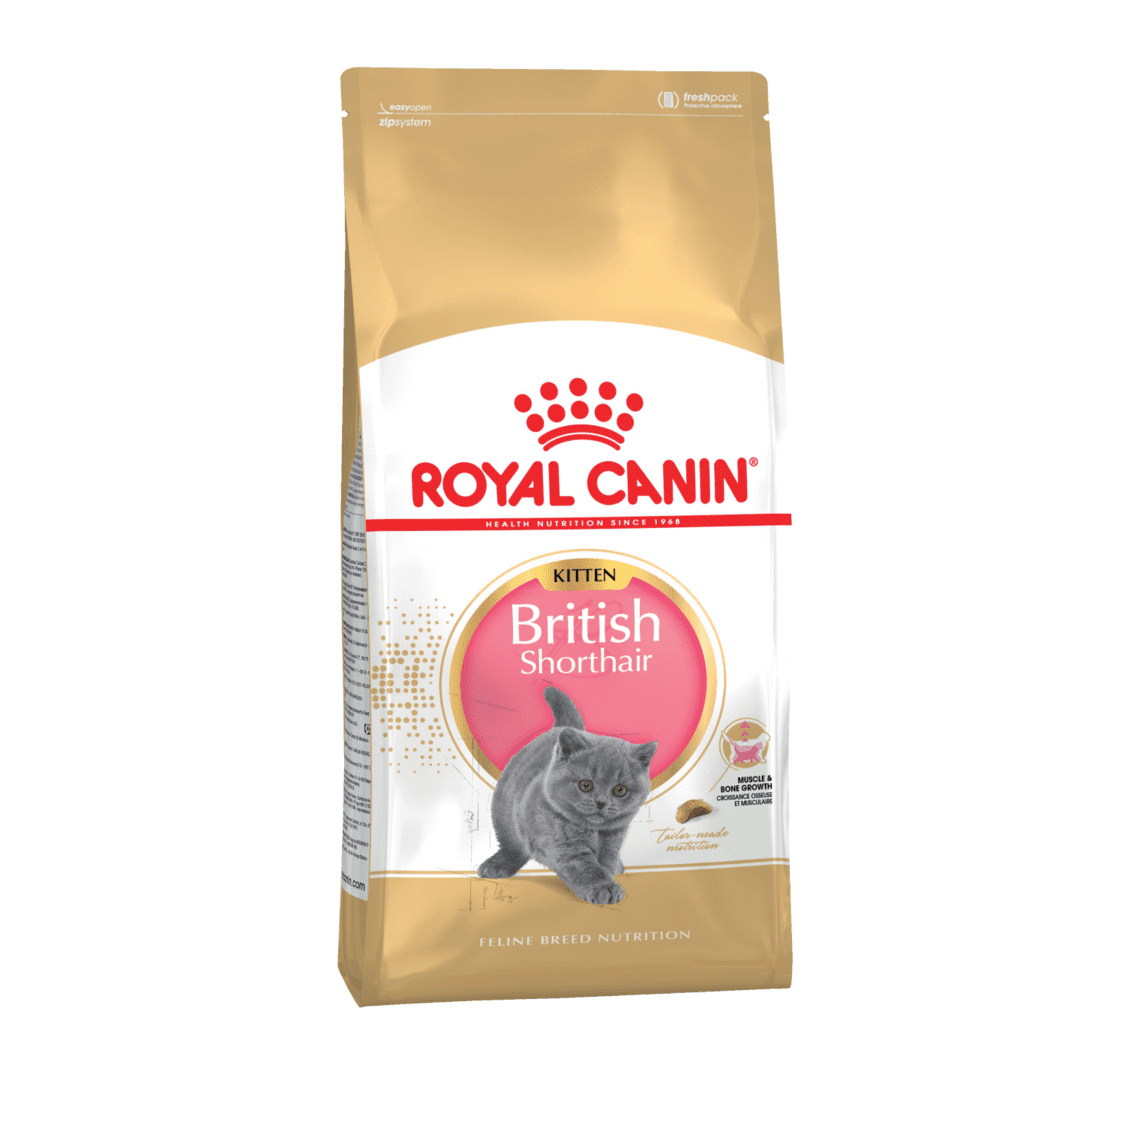 Royal Canin Корм Royal Canin корм для британских короткошерстных котят 4-12 мес. (2 кг) royal canin корм royal canin корм для британских короткошерстных котят 4 12 мес 2 кг